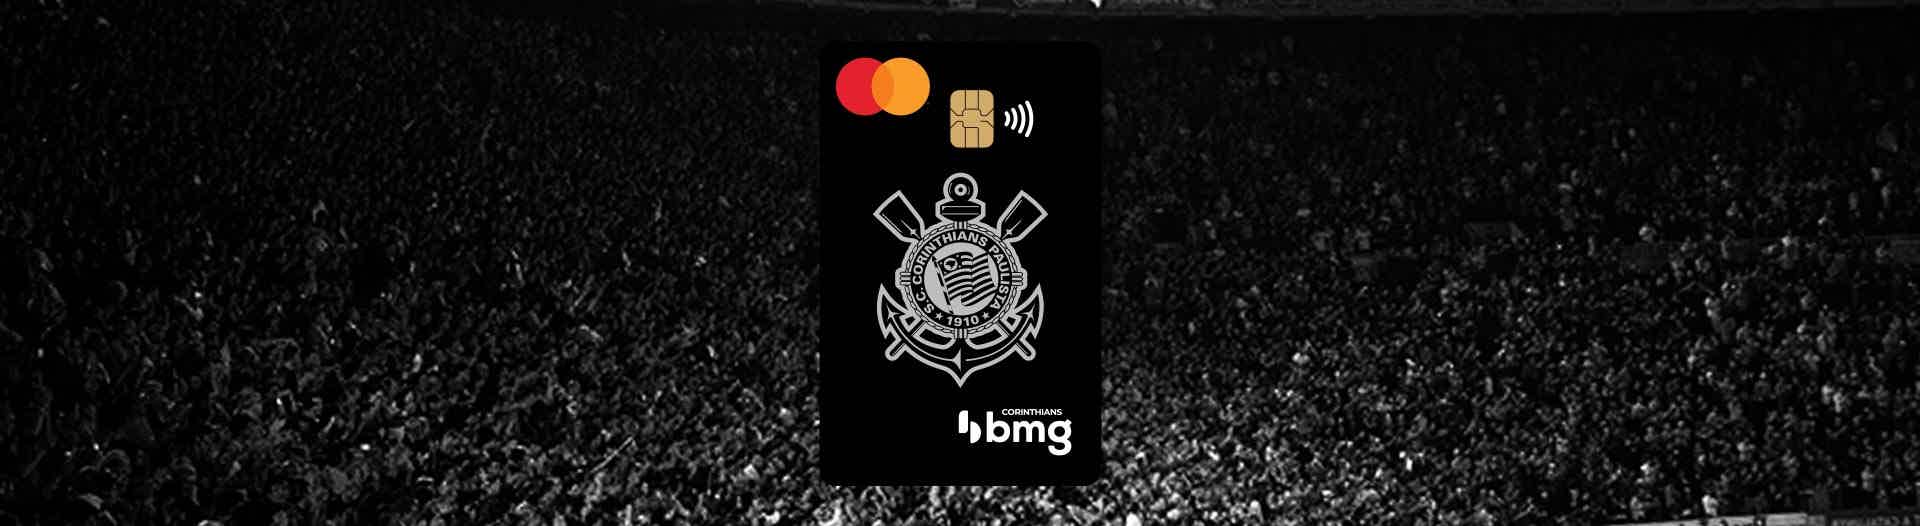 Conheça o cartão de crédito Corinthias BMG Imagem: Banco bmg